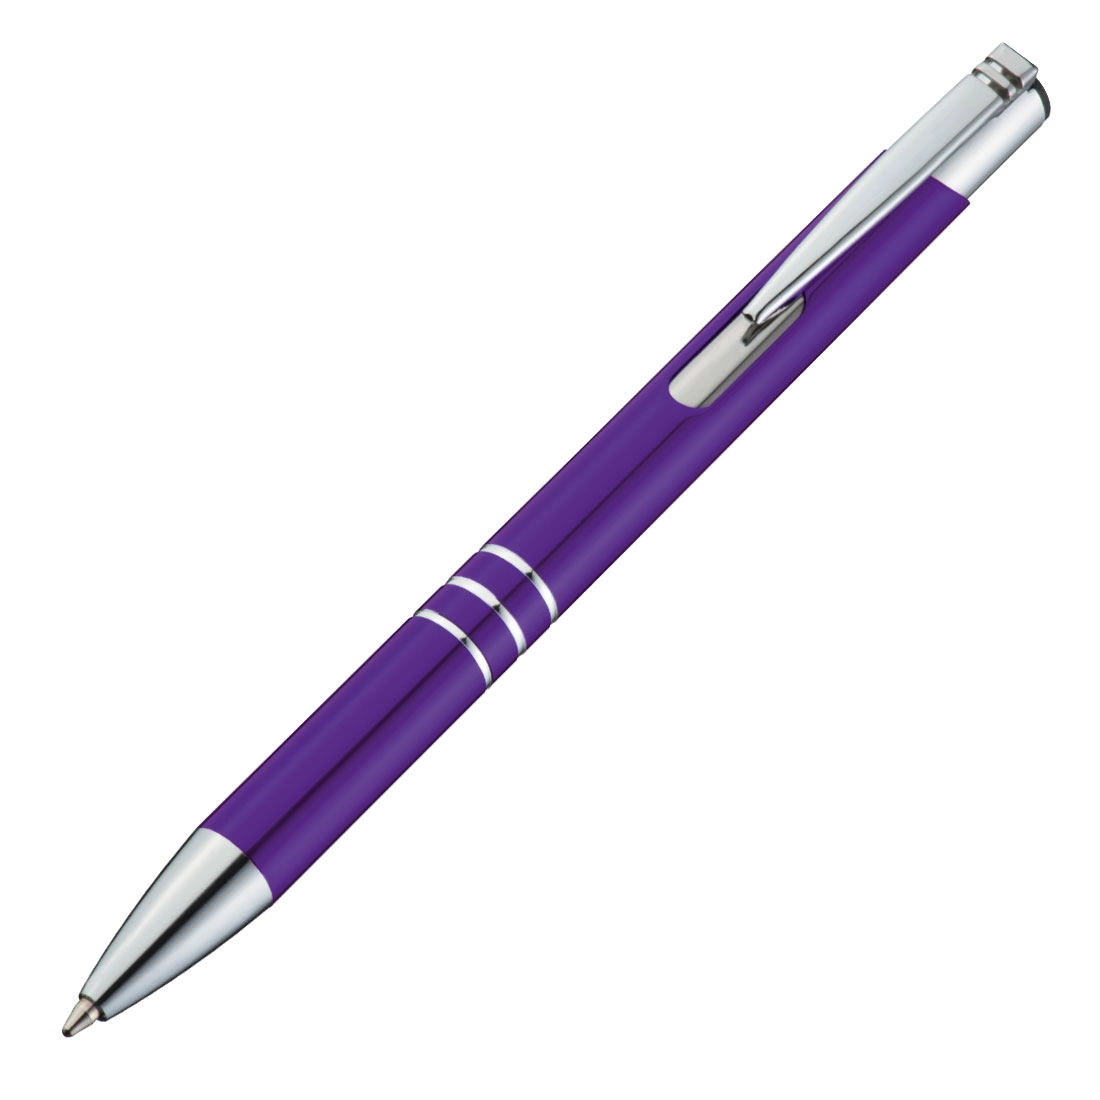 Długopis metalowy GM-13339-12 fioletowy